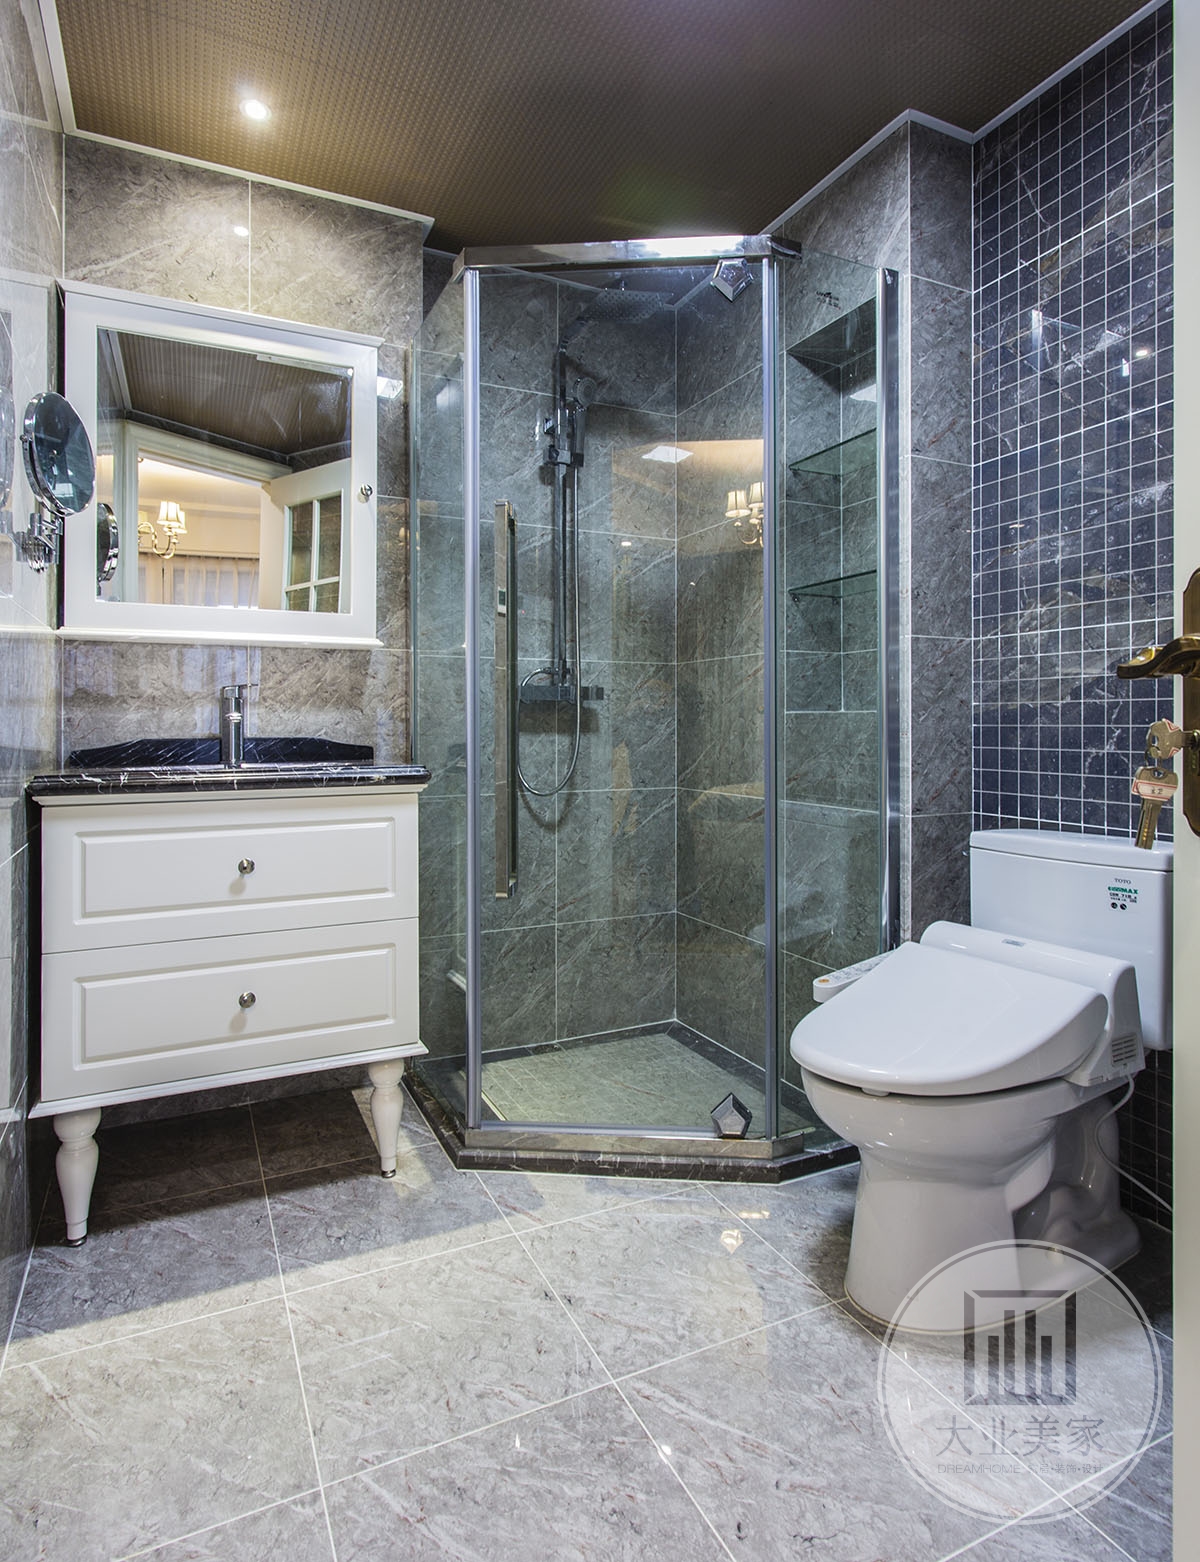 卫生间效果图：卫生间地面和墙面采用灰色瓷砖，色调比较舒适，用玻璃做隔断实现干湿分离，凸显浪漫情调。